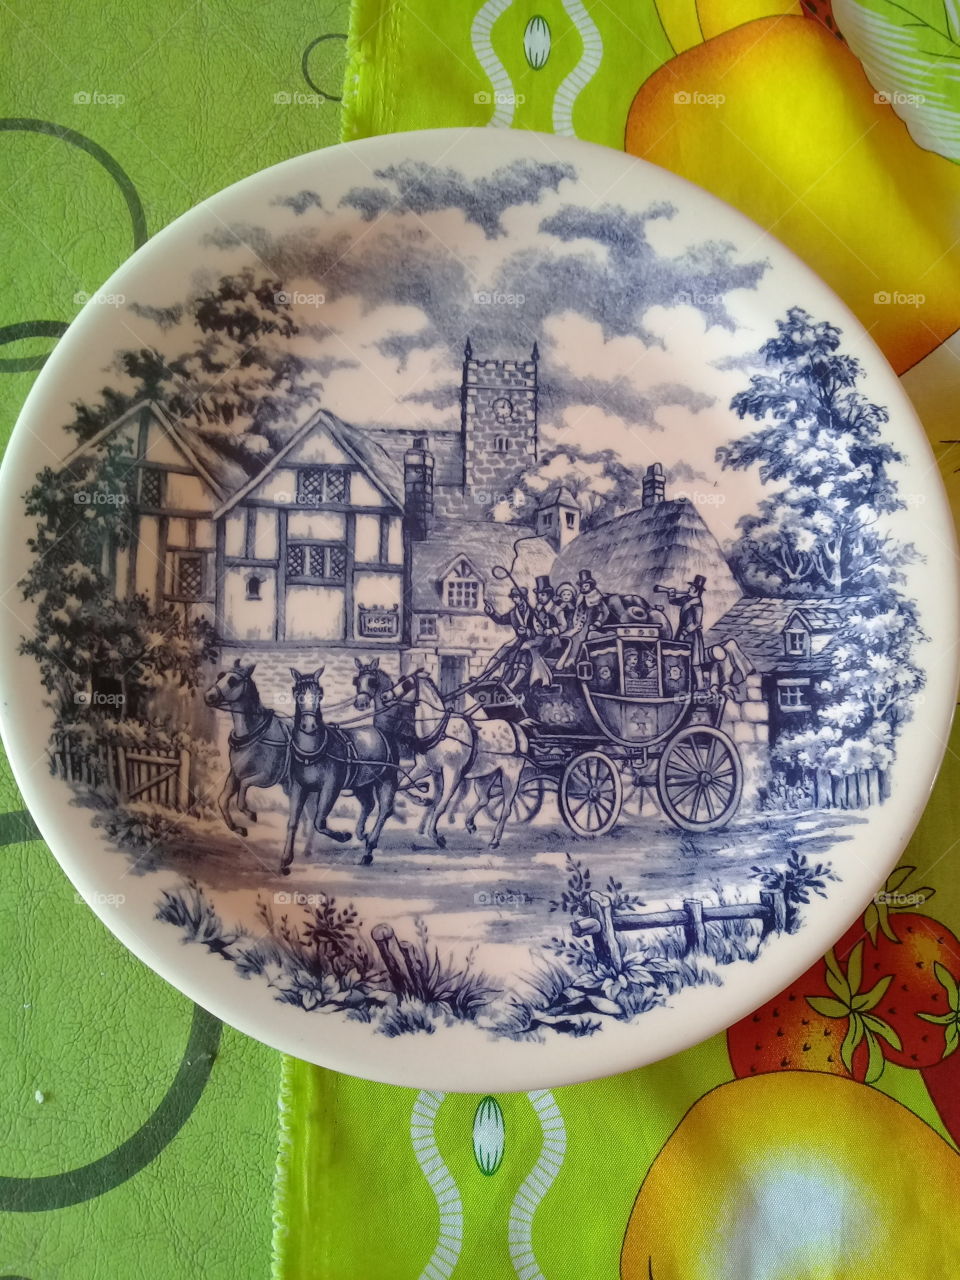 plato antiguo de cerámica pintado y decorado